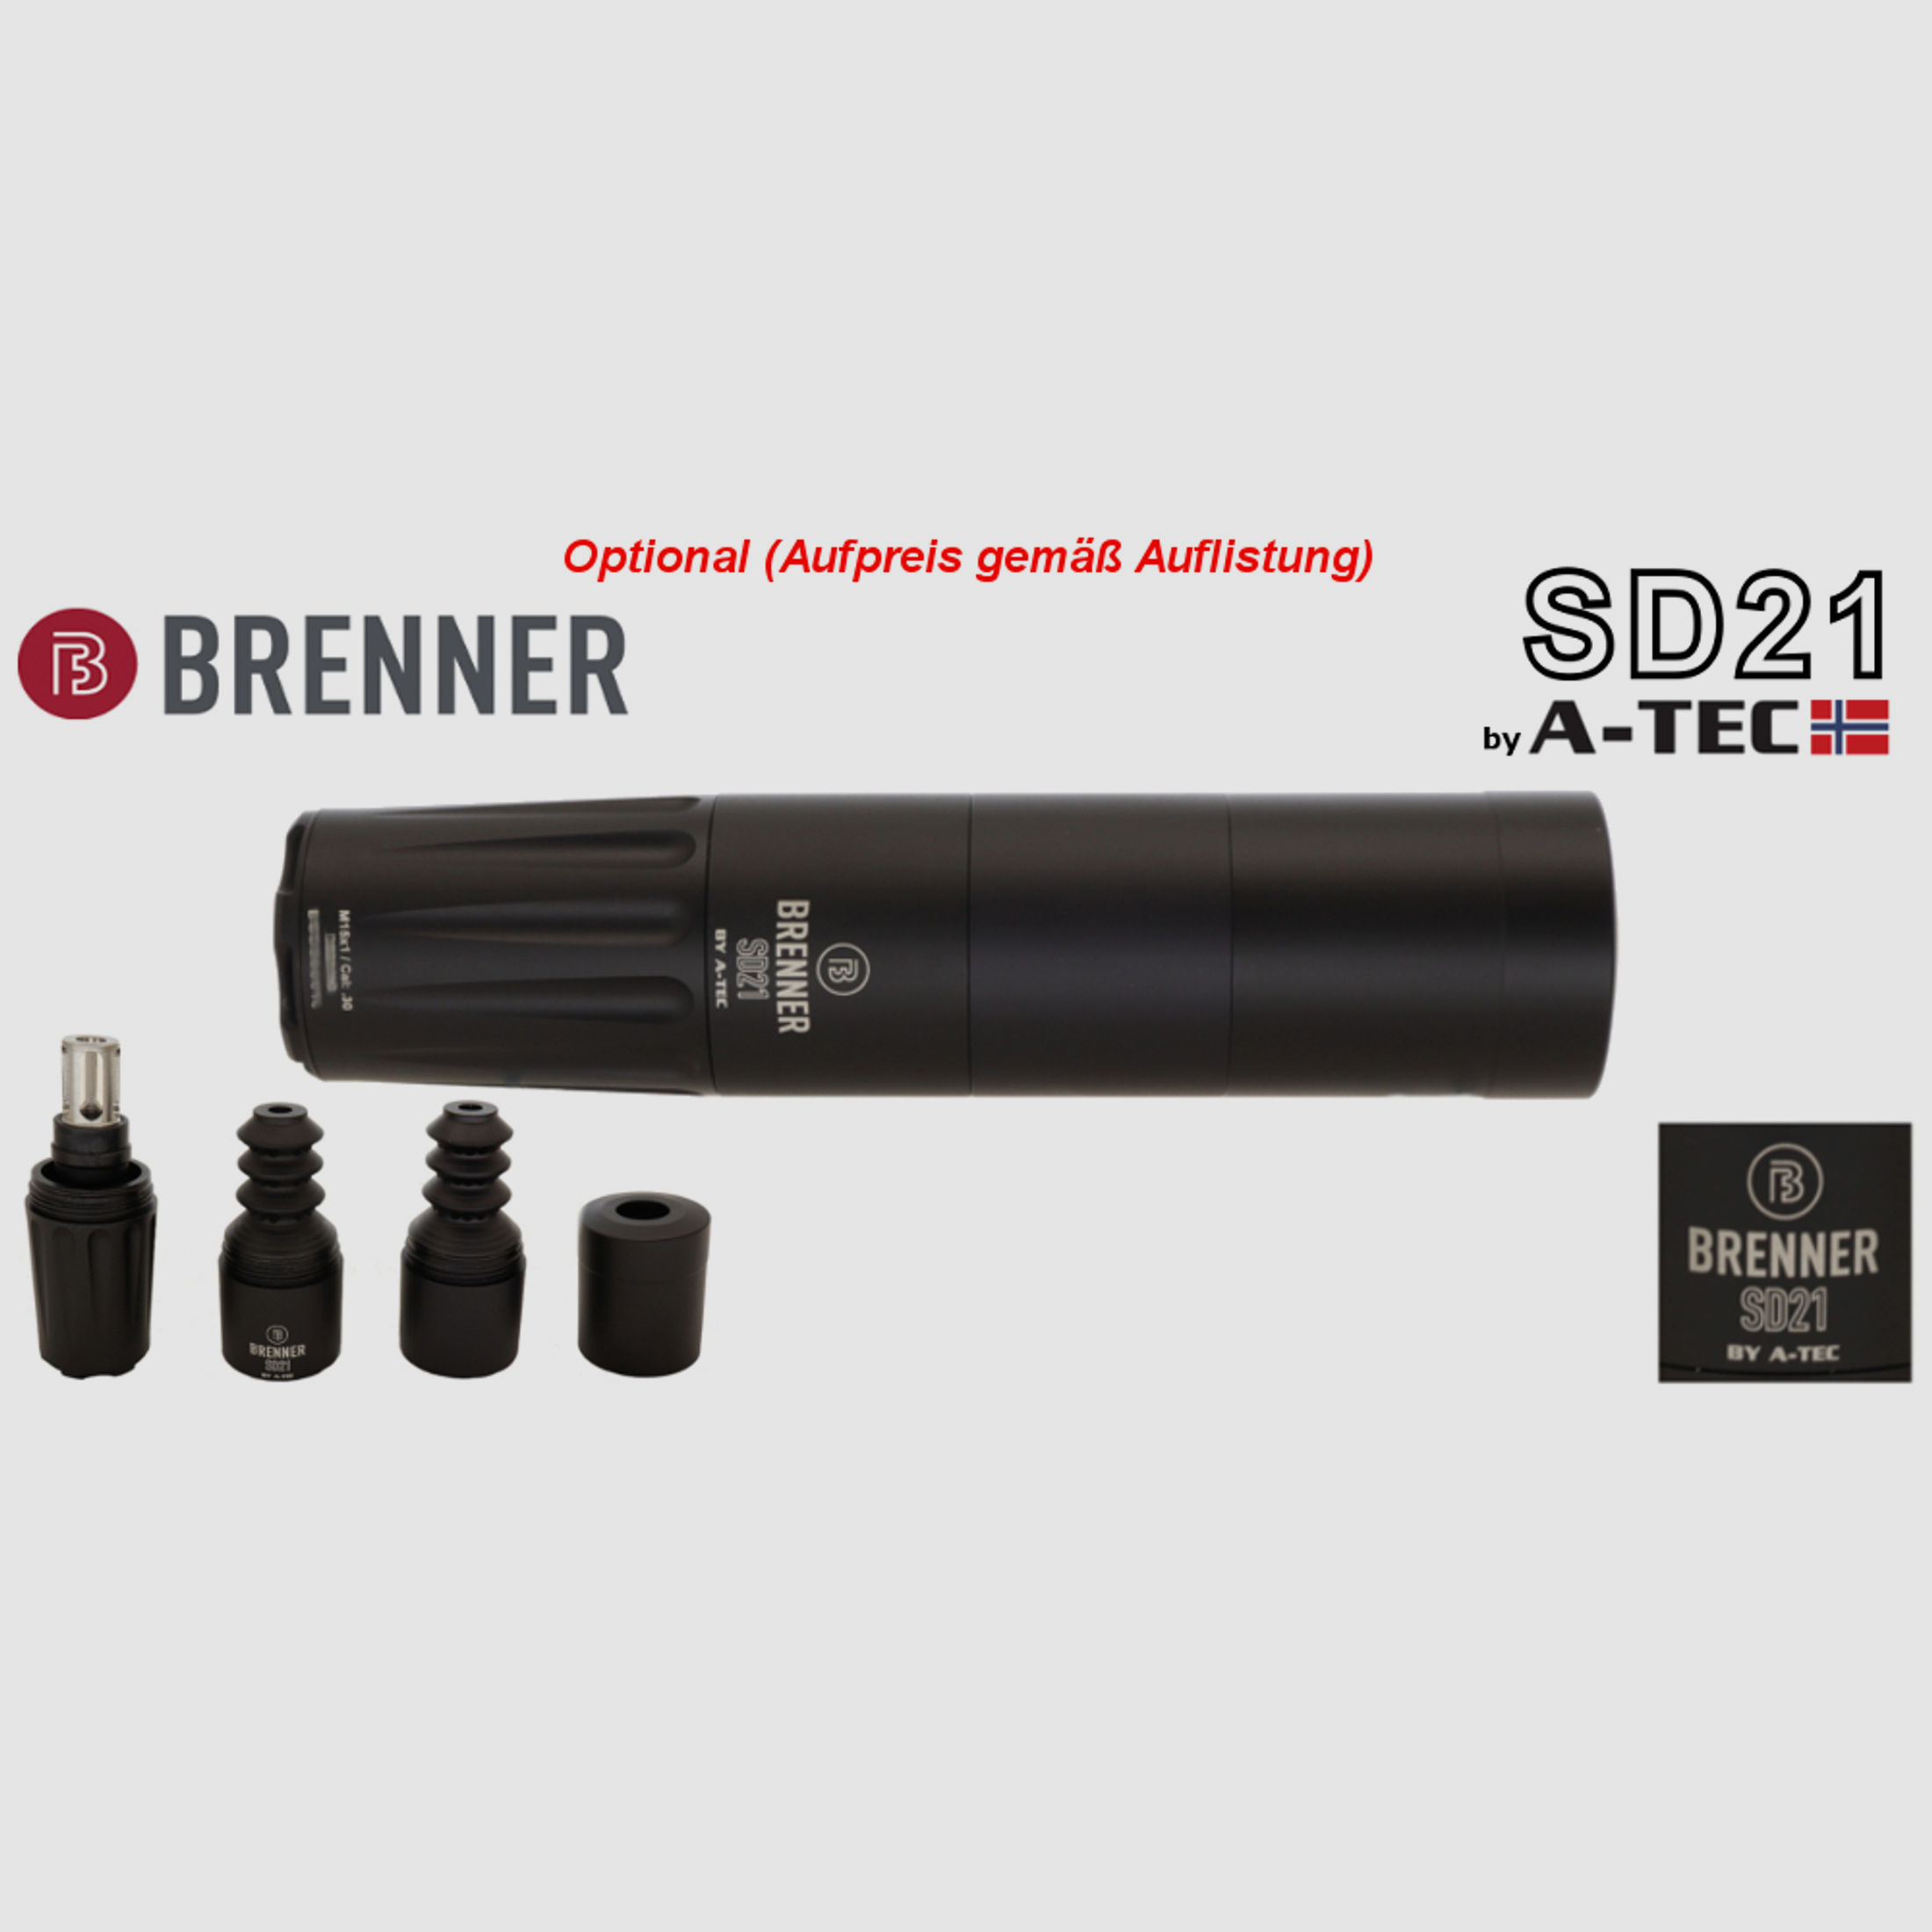 Bergara B14 B&H Prohunter LINKS Lochschaft Zeiss 2.5-15x56 fertig montiert / Optional: Brenner Schalldämpfer